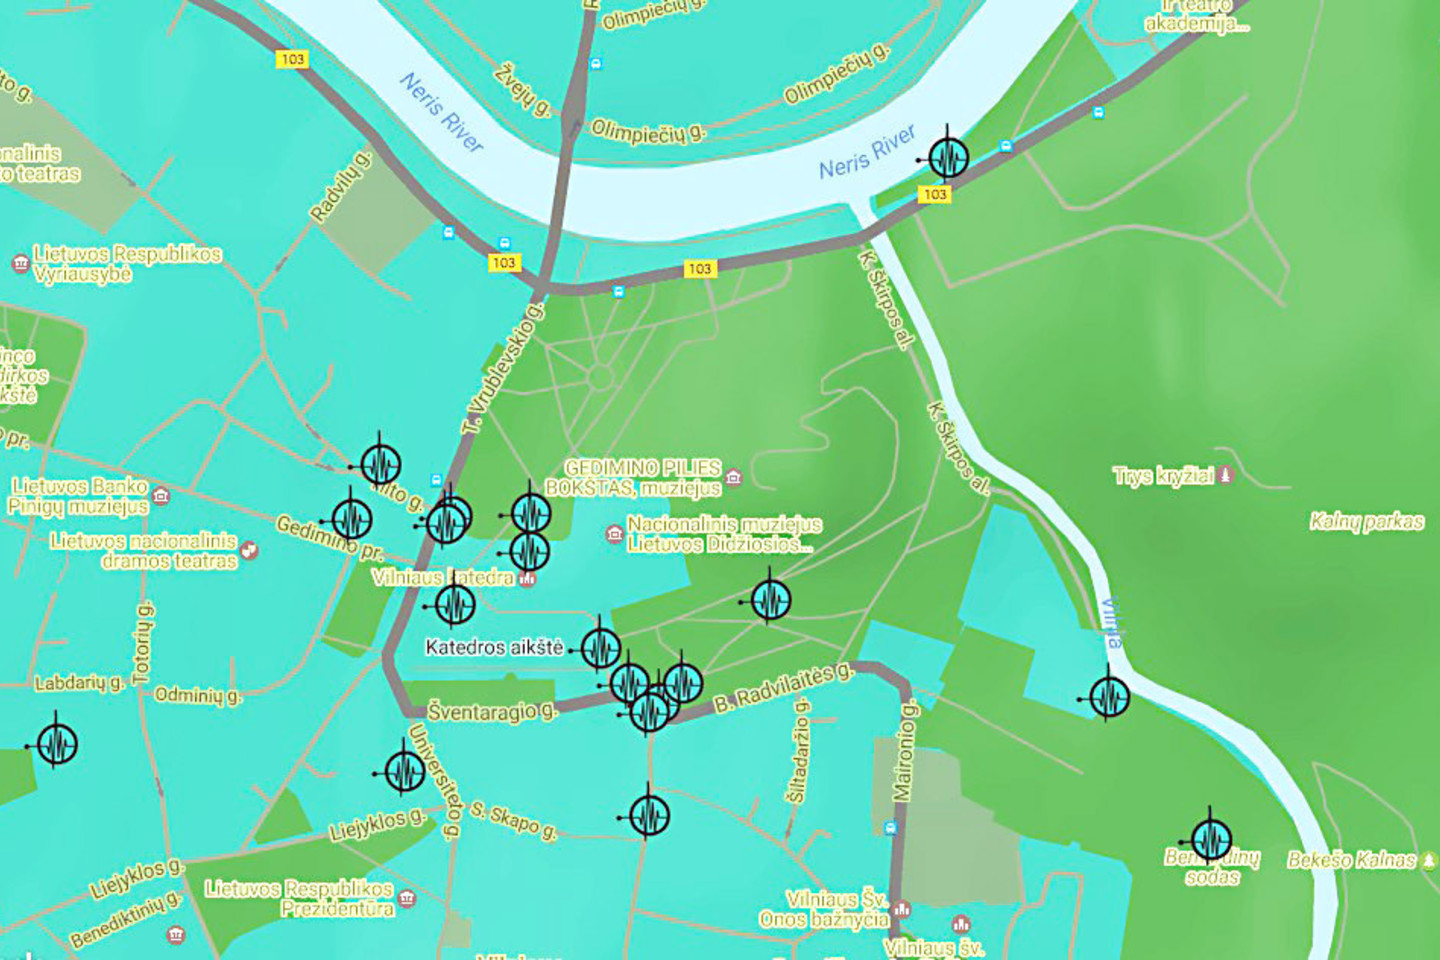 Internete pateiktas garsų žemėlapis leidžia išgirsti įvairių sostinės vietų skambesį.